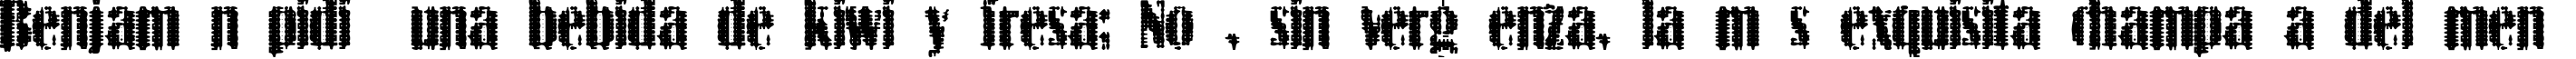 Пример написания шрифтом BN-ArNoN текста на испанском